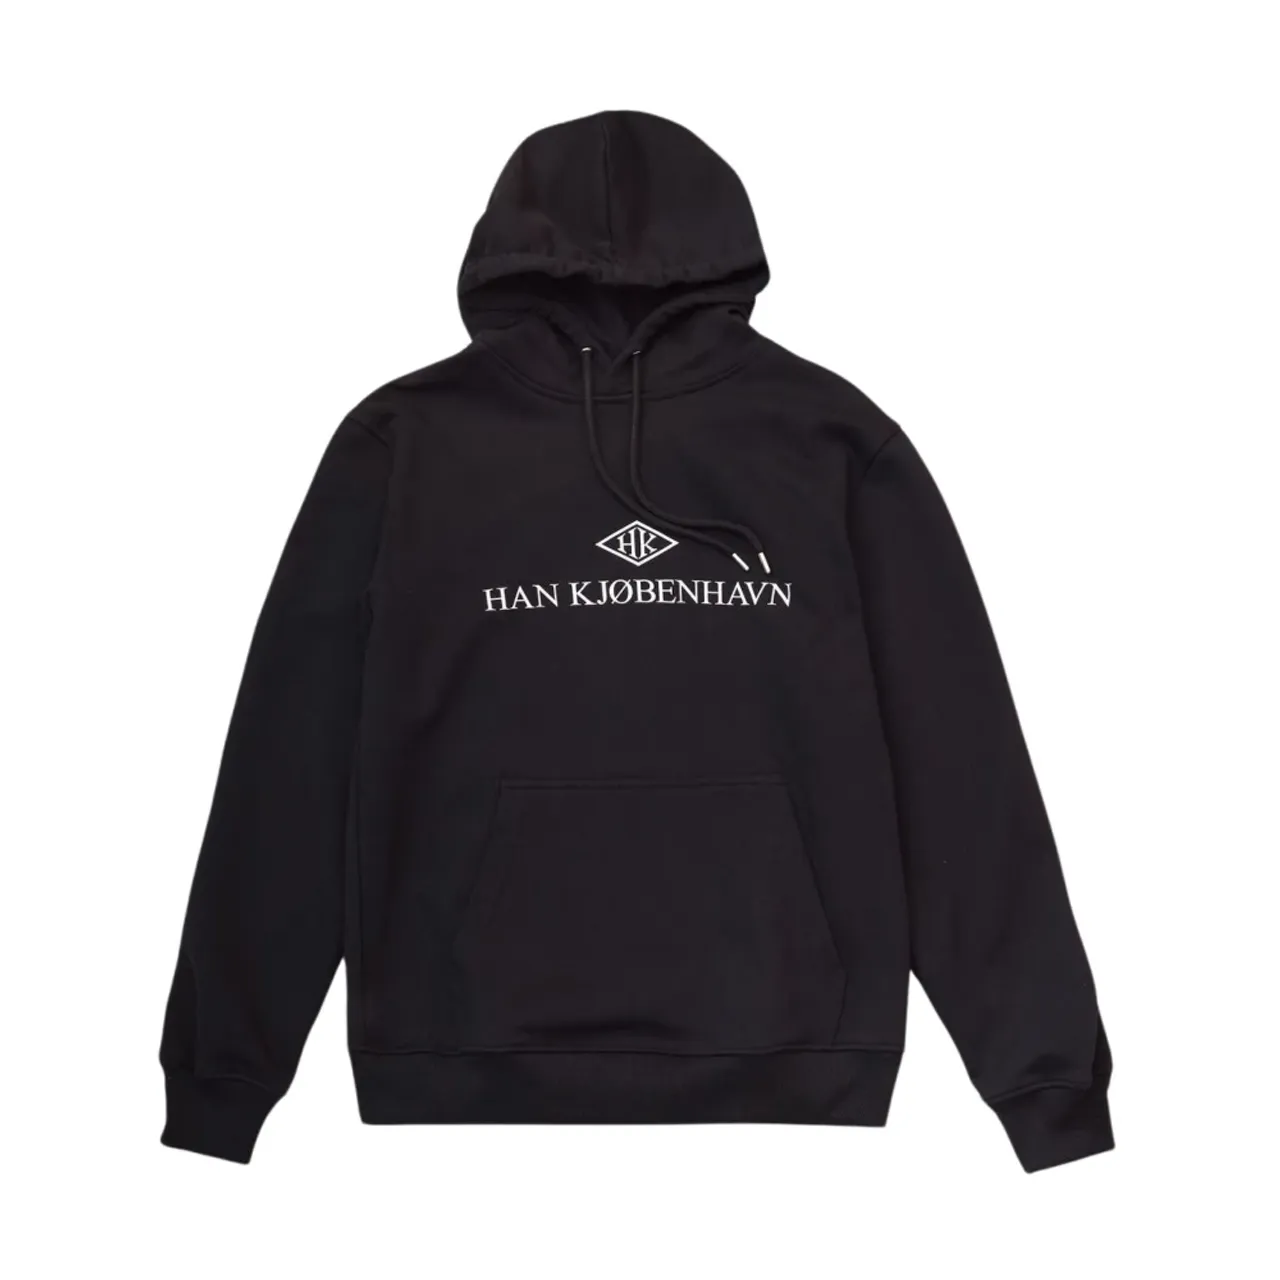 Han Kjøbenhavn - Sweatshirts & Hoodies 